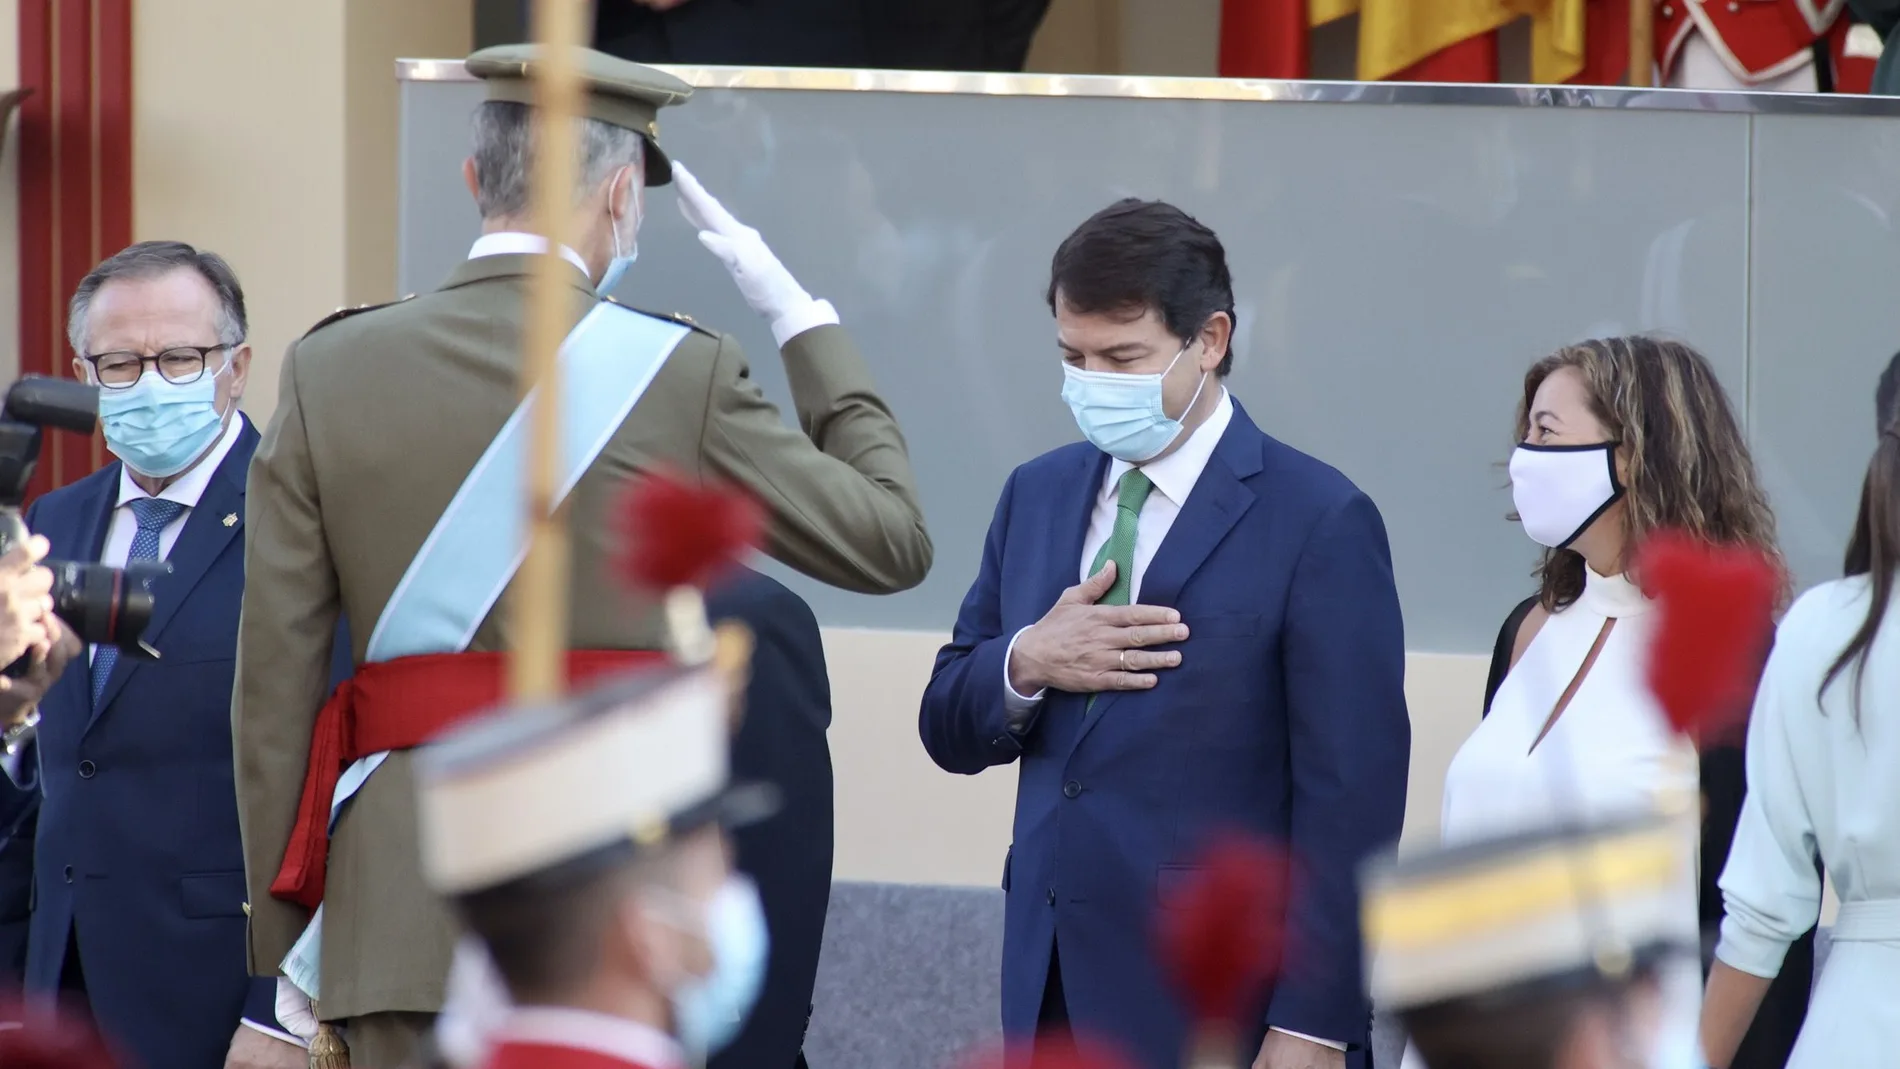 El presidente Fernández Mañueco saluda a Su Majestad el rey, Felipe VI, durante lo actos de la Fiesta Nacional en Madrid